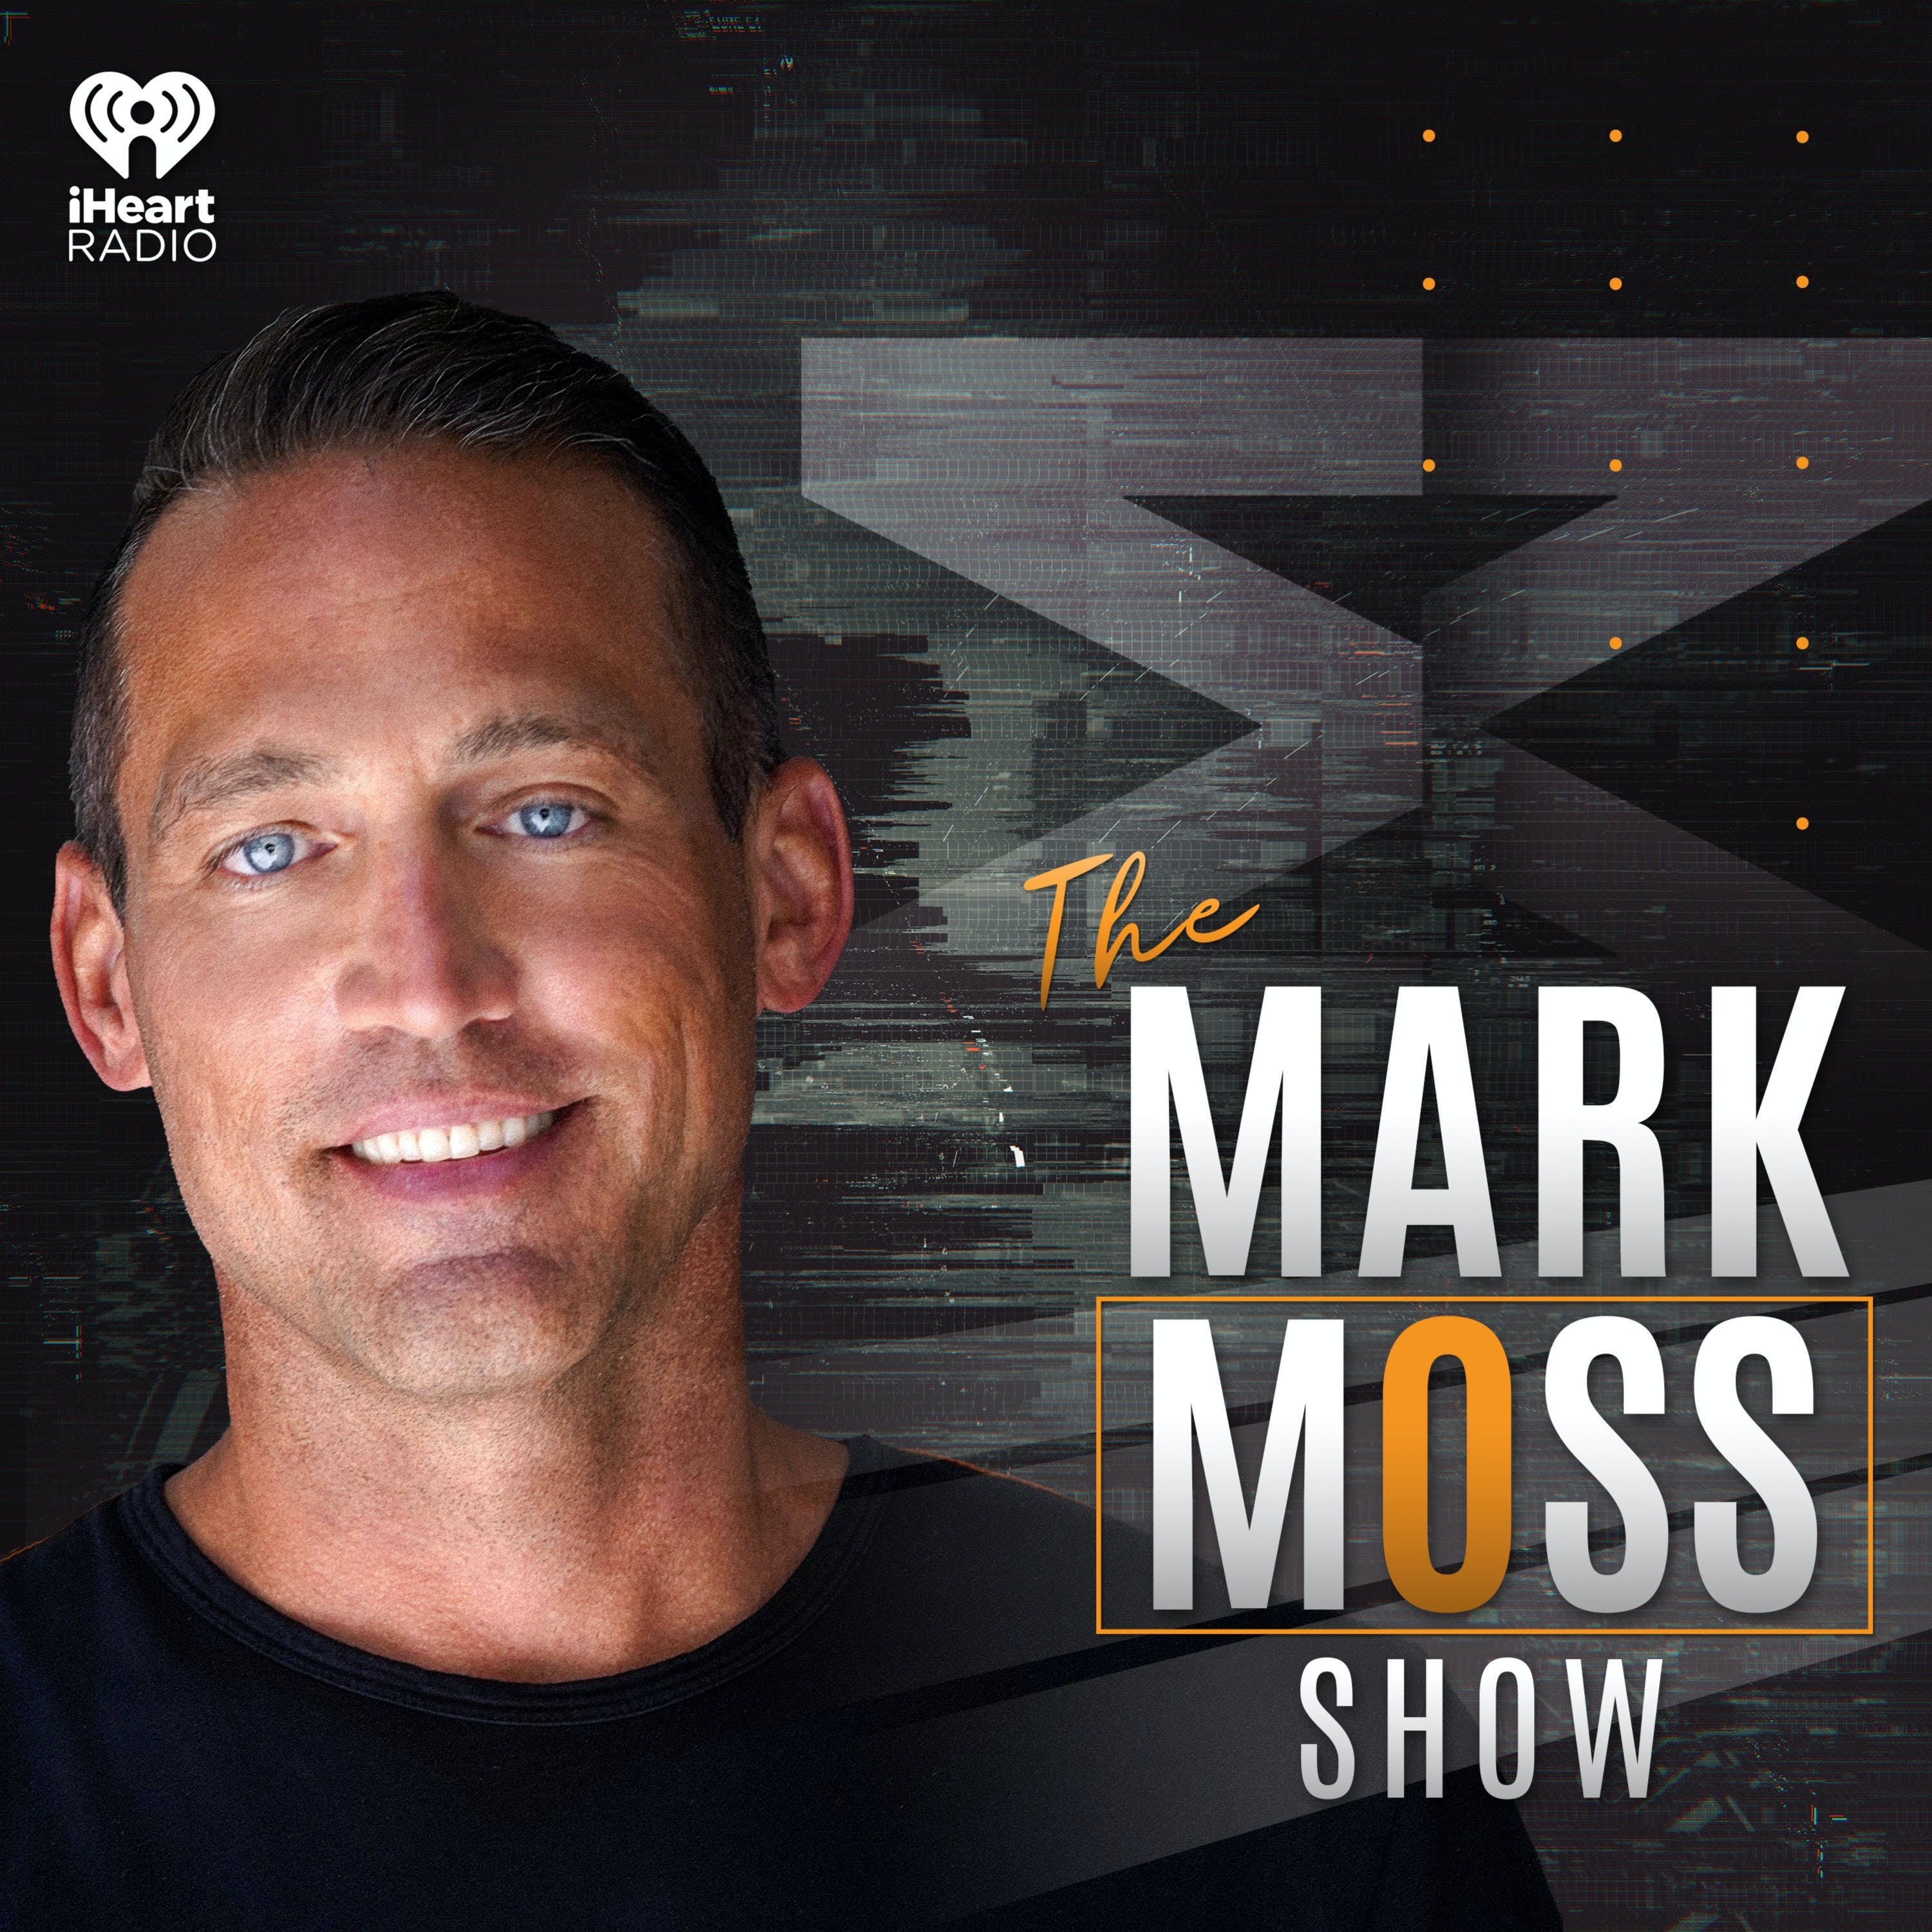 The Mark Moss Show Oct 15, 2021